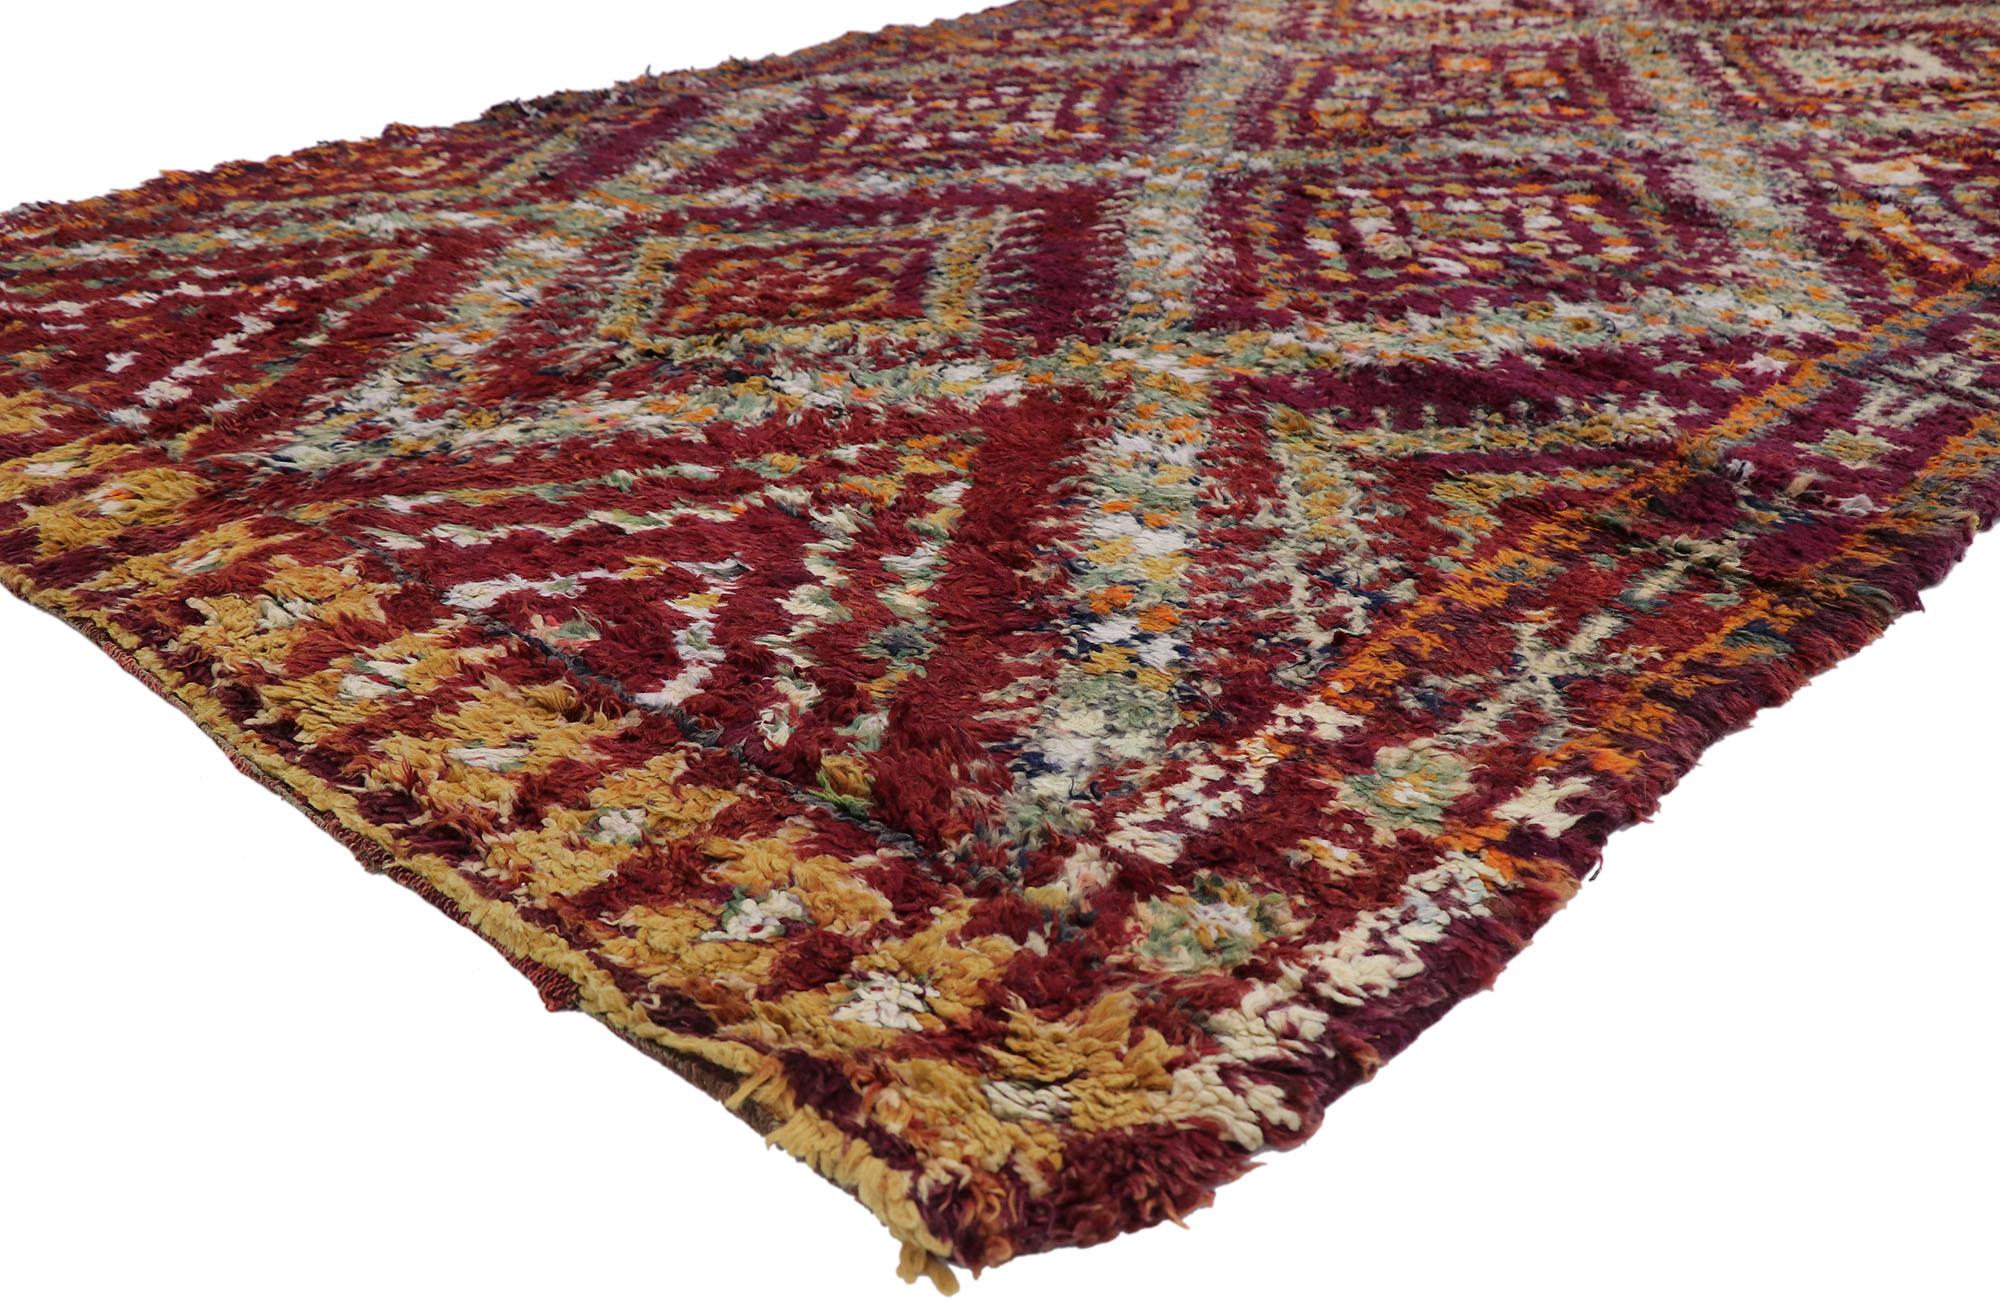 21212 Vintage Berber Beni M'Guild Marokkanischer Teppich mit Tribal Style 06'01 x 10'03. Dieser handgeknüpfte marokkanische Beni M'Guild-Teppich aus alter Berberwolle besticht durch sein kühnes, ausdrucksstarkes Design, seine unglaublichen Details